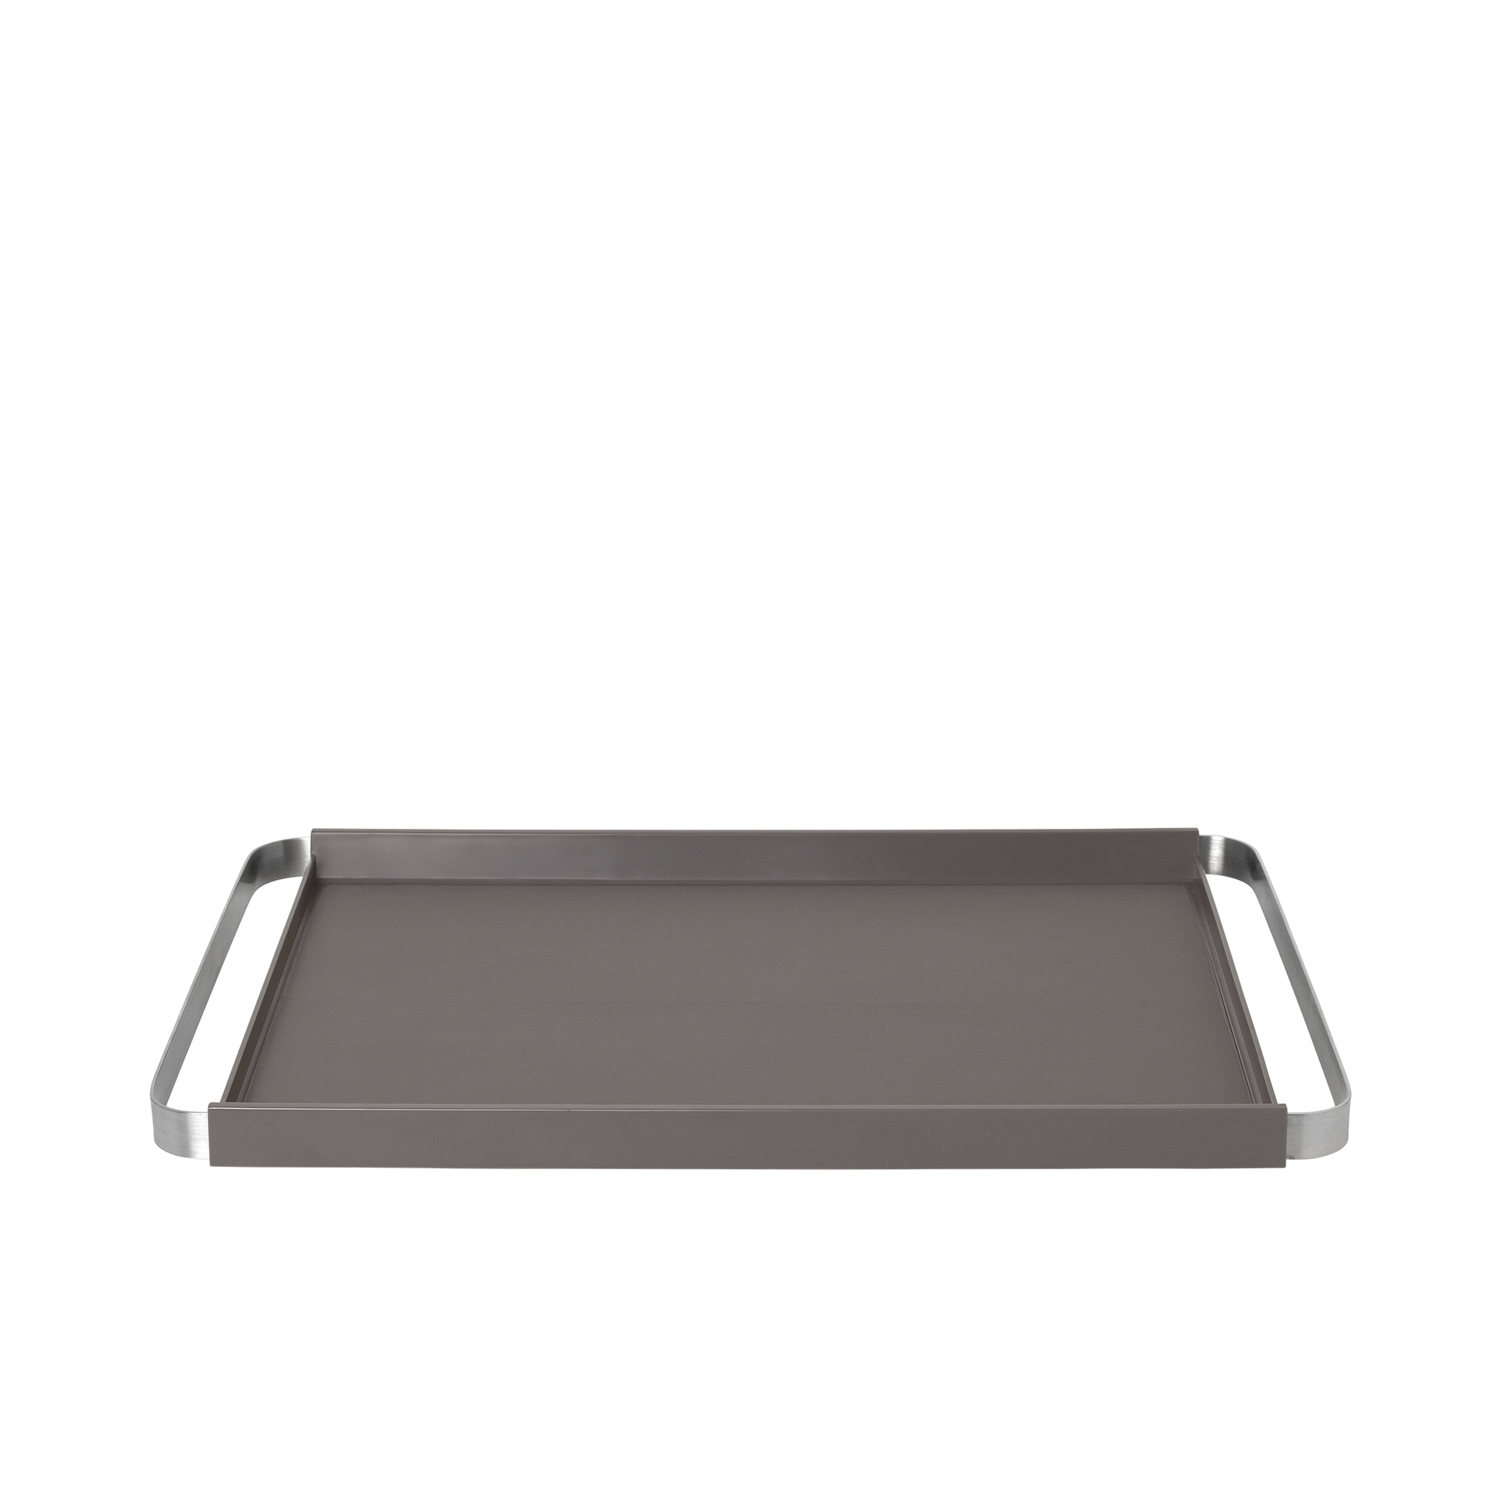 Blomus Tablett PEGOS, rechteckig, mit rutschhemmender Silikonauflage, Maße: 50x32x3,7 cm, Farbe: warm gray